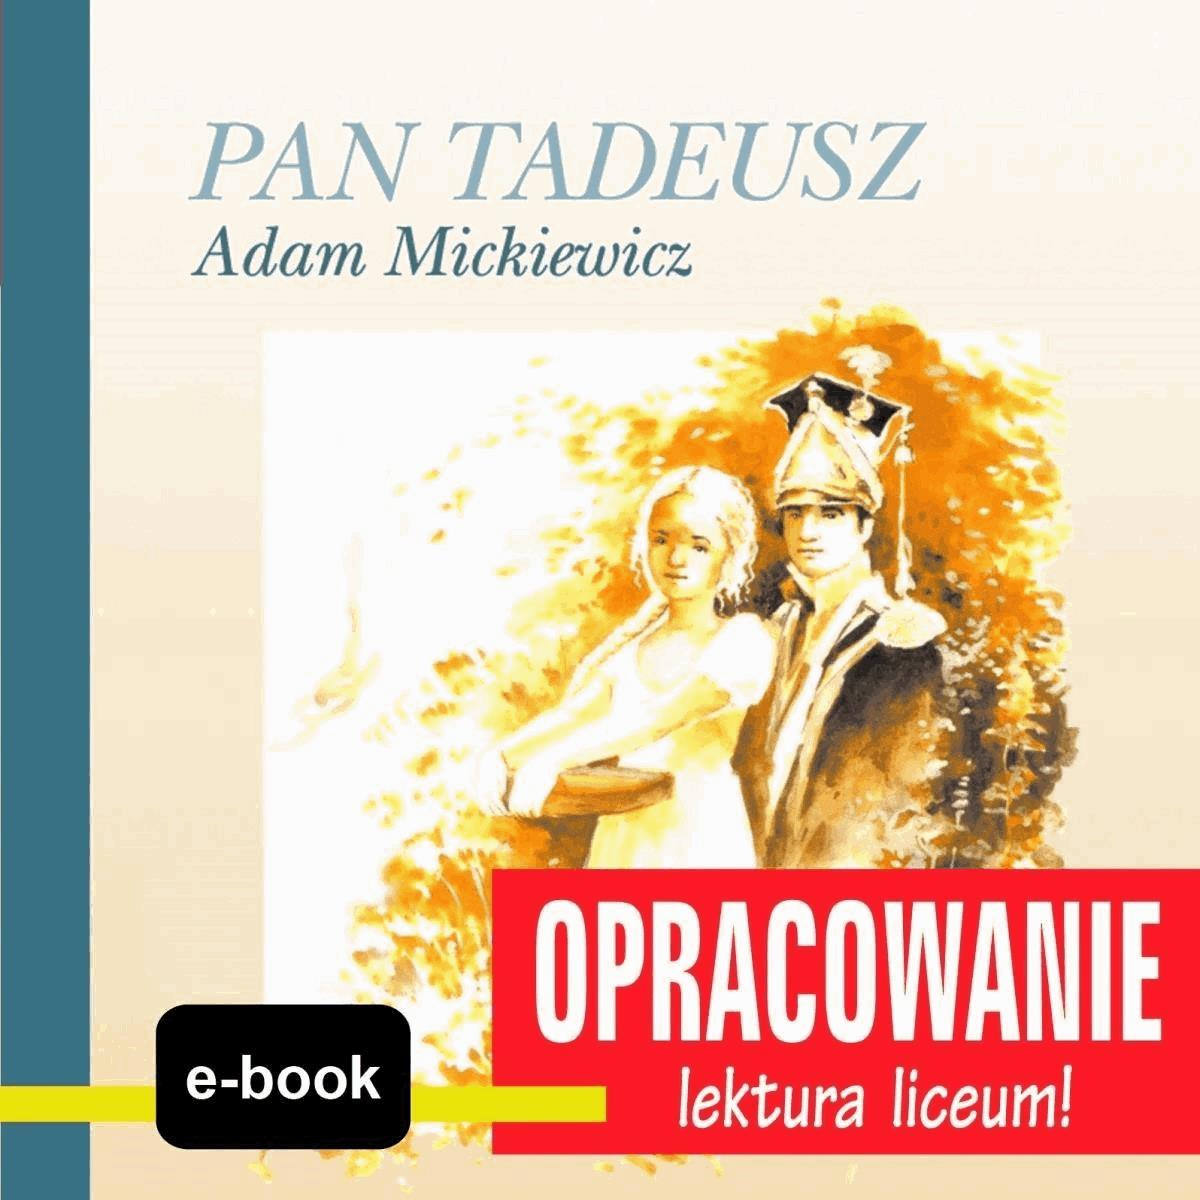 Okładka:Pan Tadeusz (Adam Mickiewicz) - opracowanie 